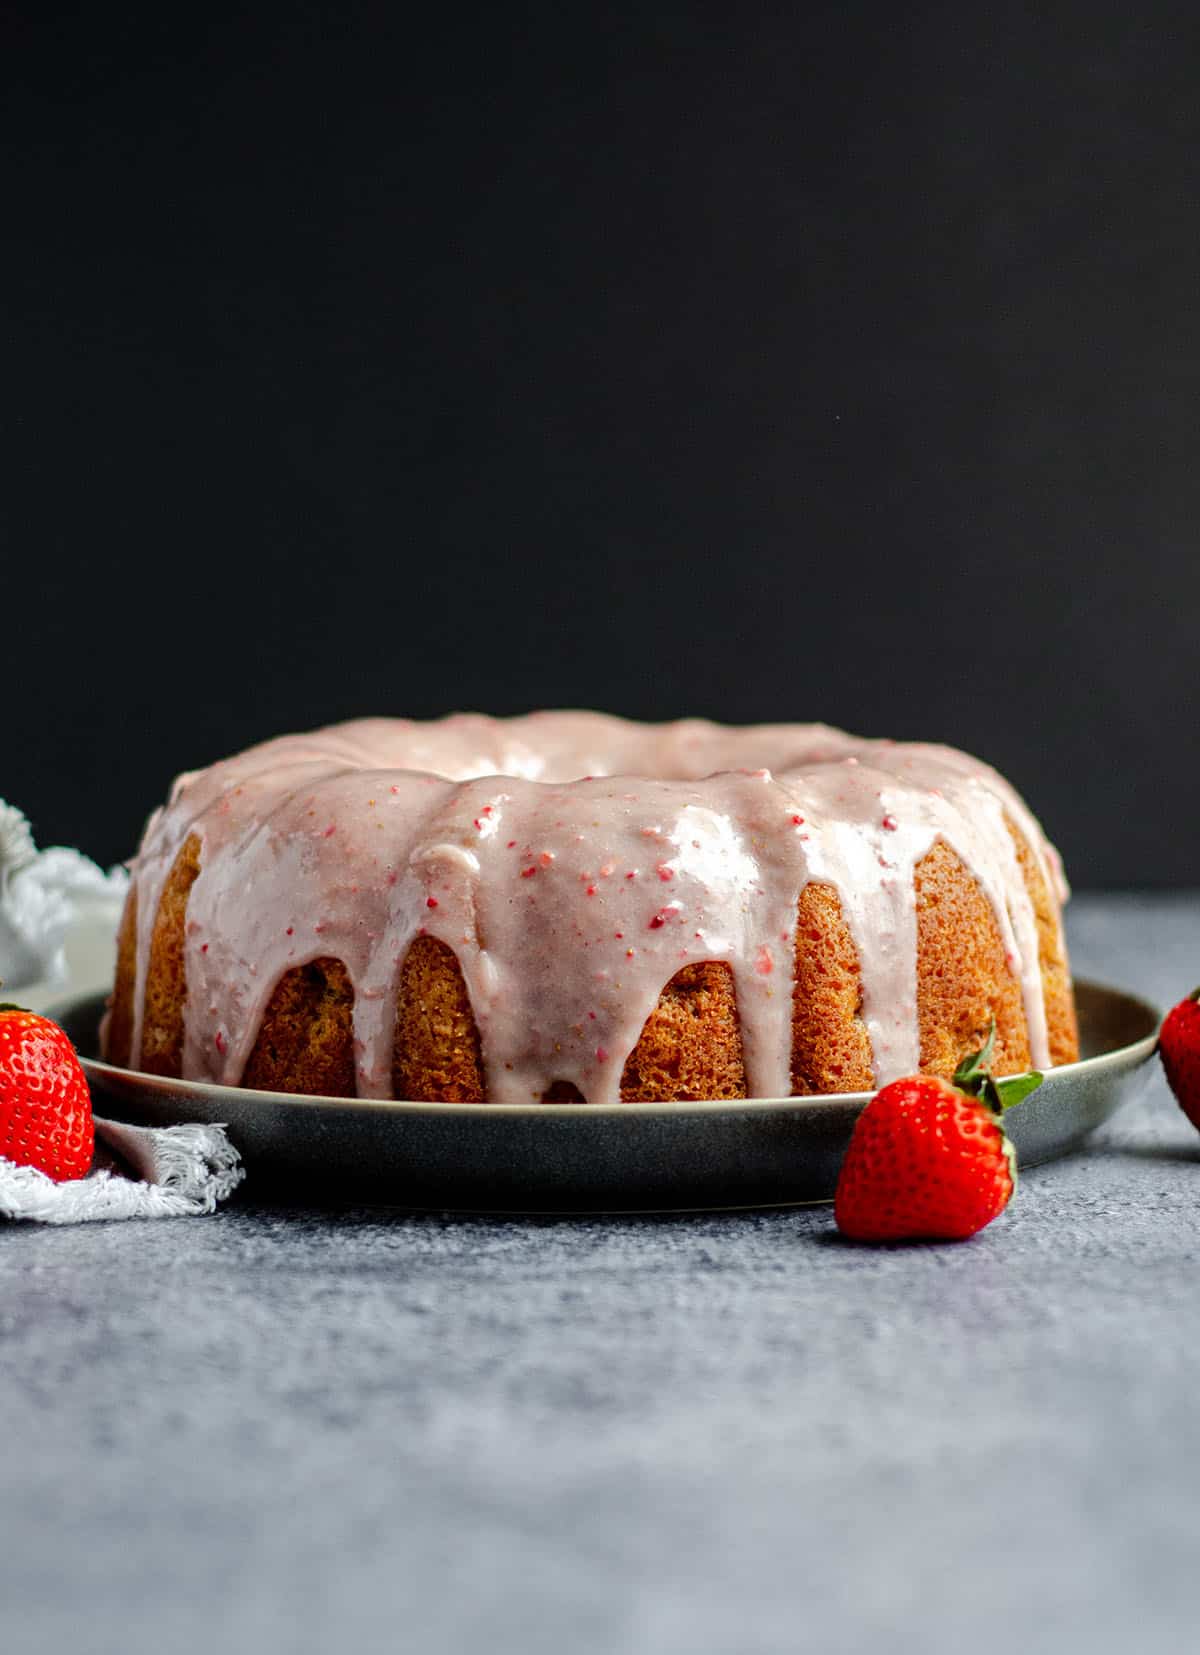 strawberry bundt cake on a plate